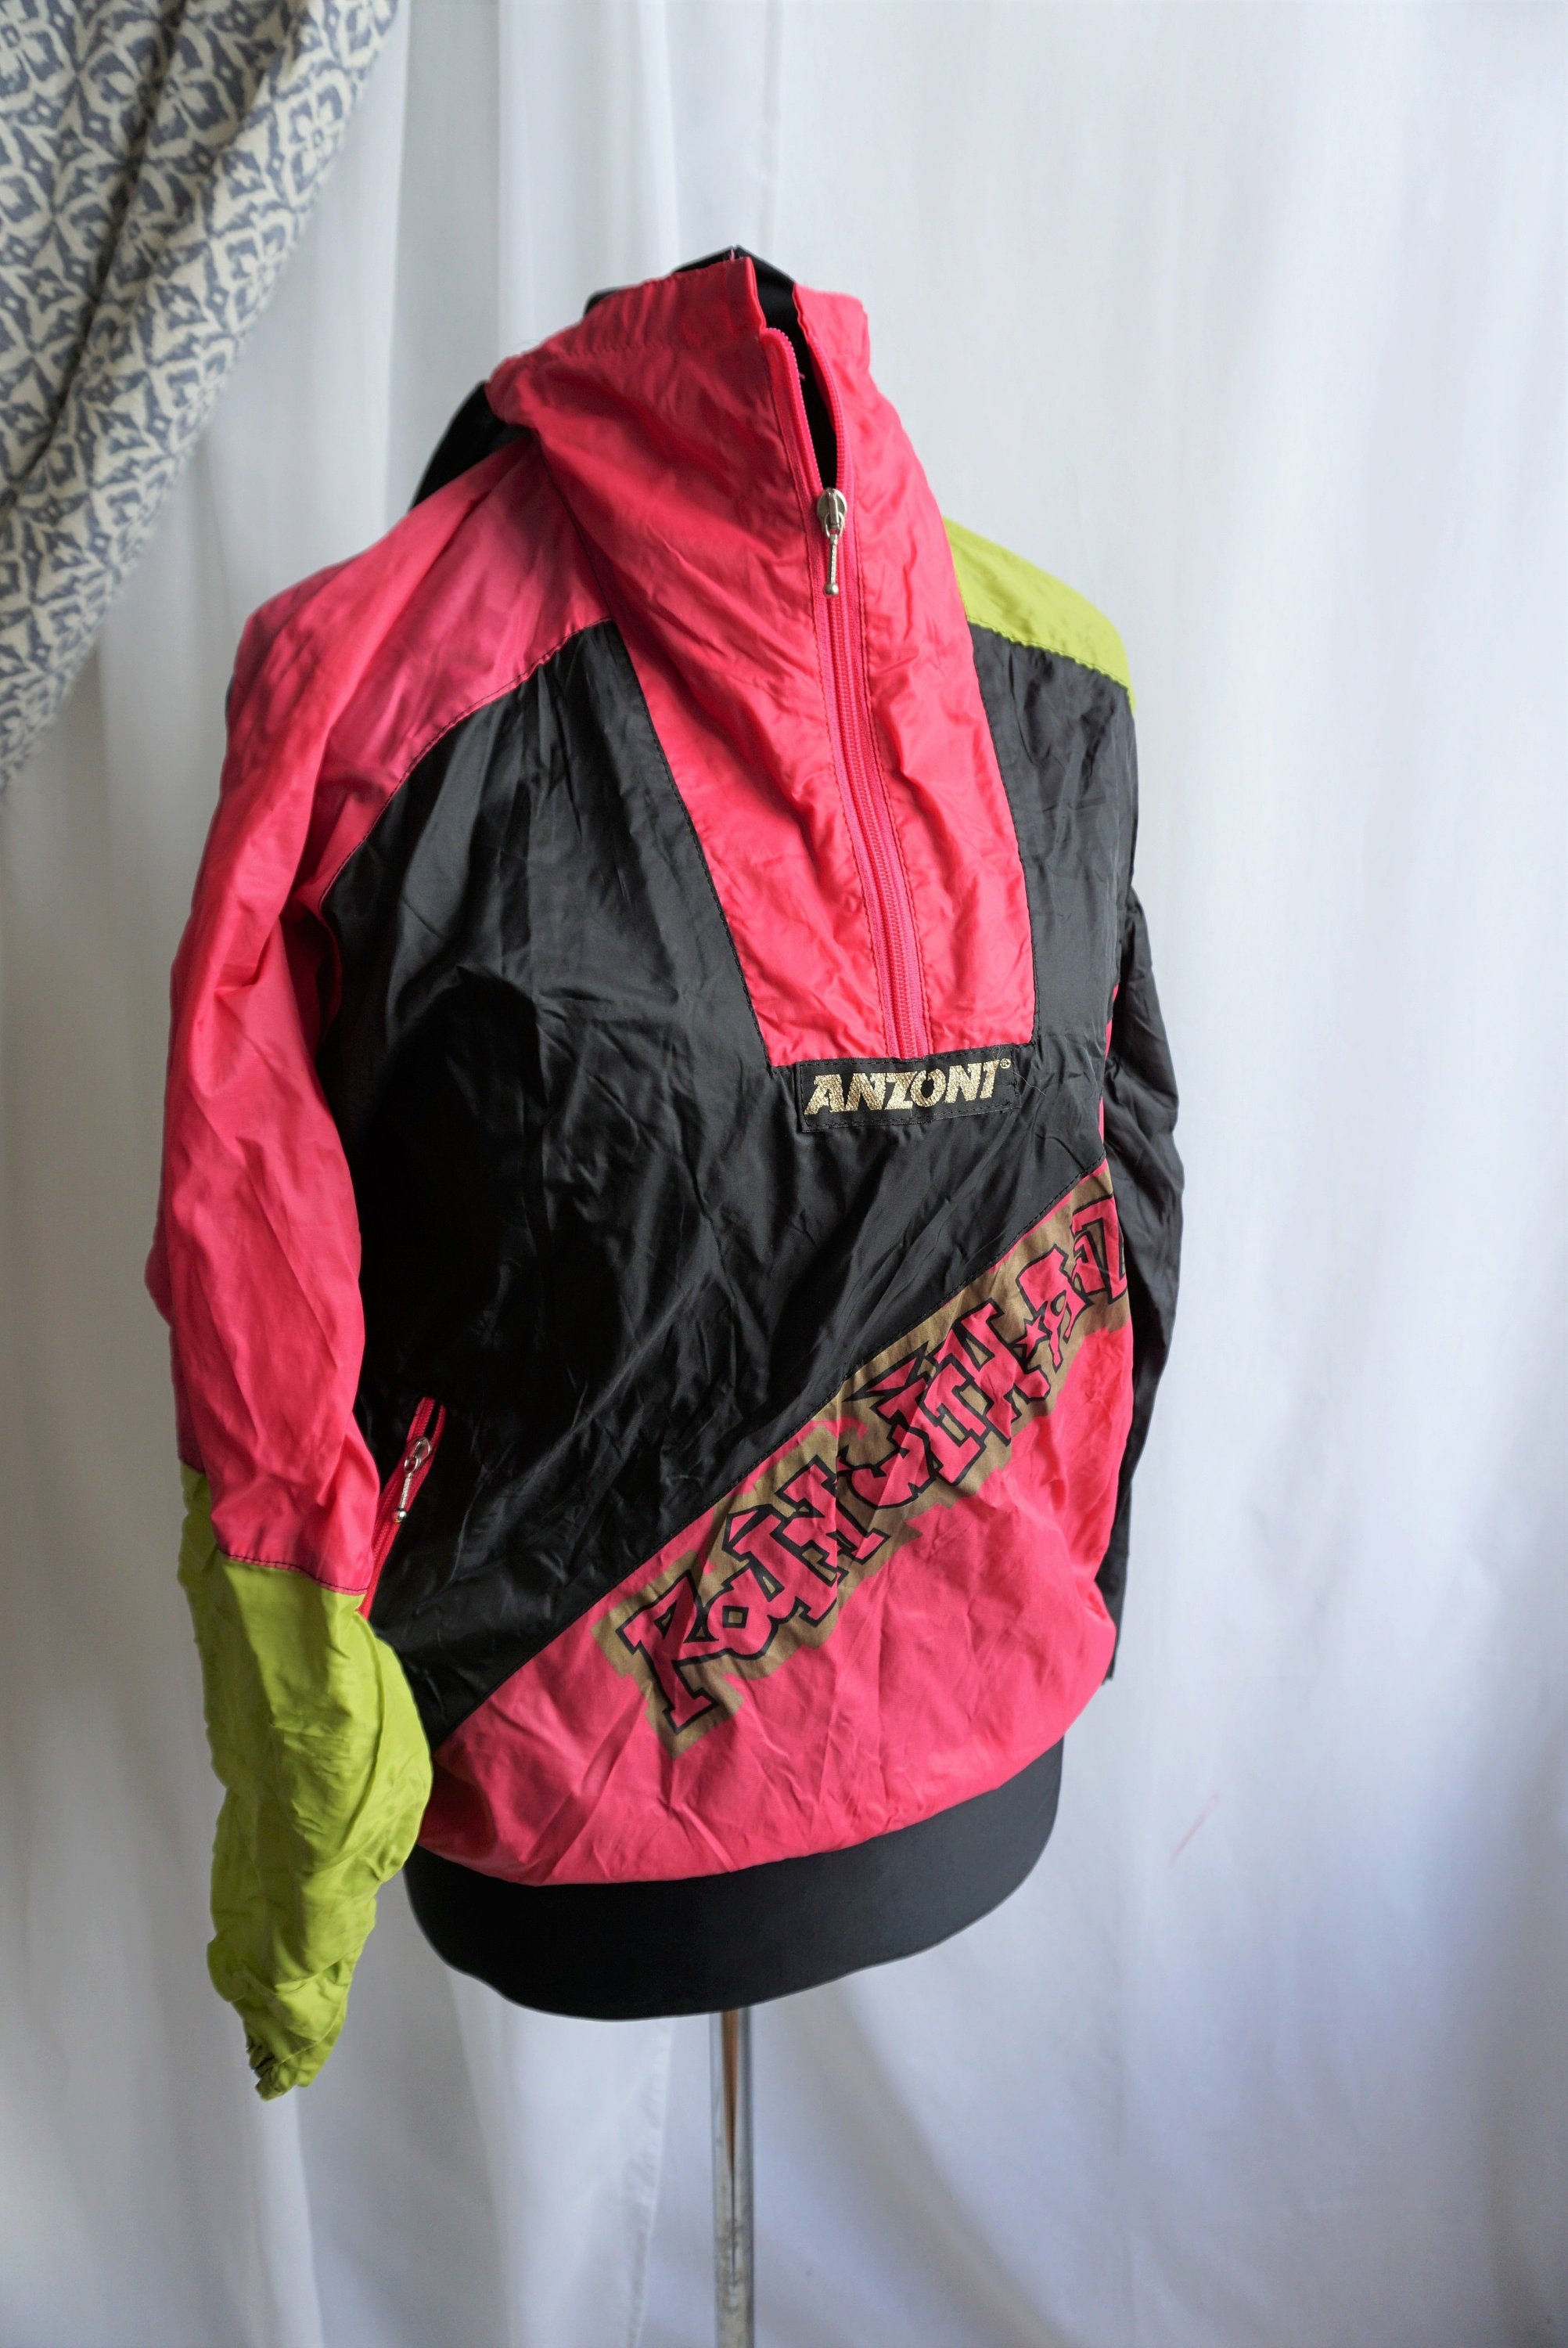 Vintage Raincoat / Rain coat / Windbreaker / S / M / Outwear / | Etsy